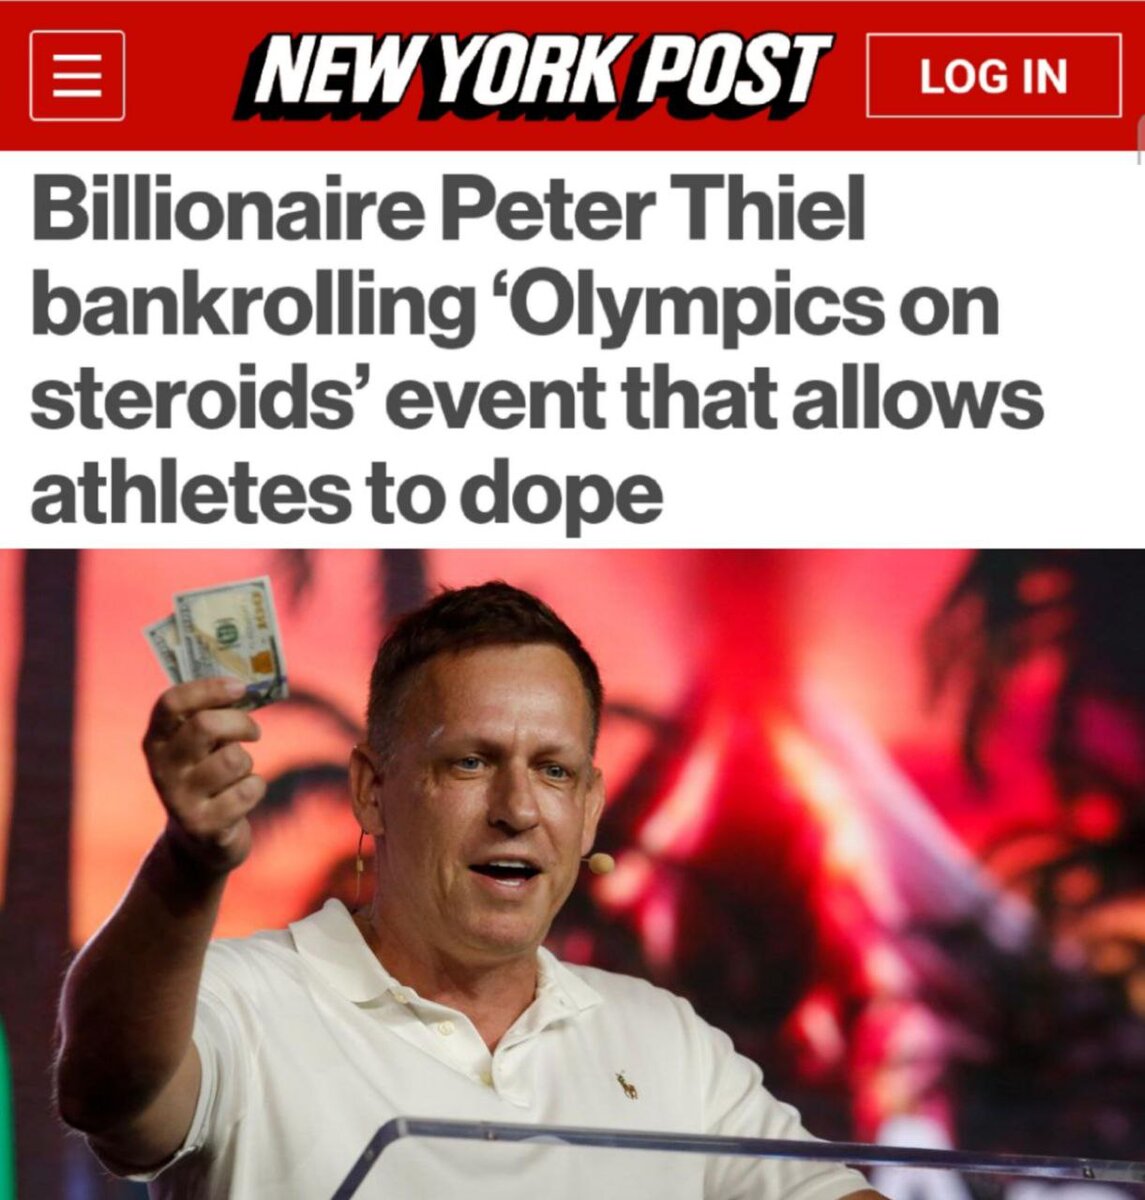 «Миллиардер Питер Тиль профинансирует «Олимпиаду на стероидах», позволяющую спортсменам принимать допинг»